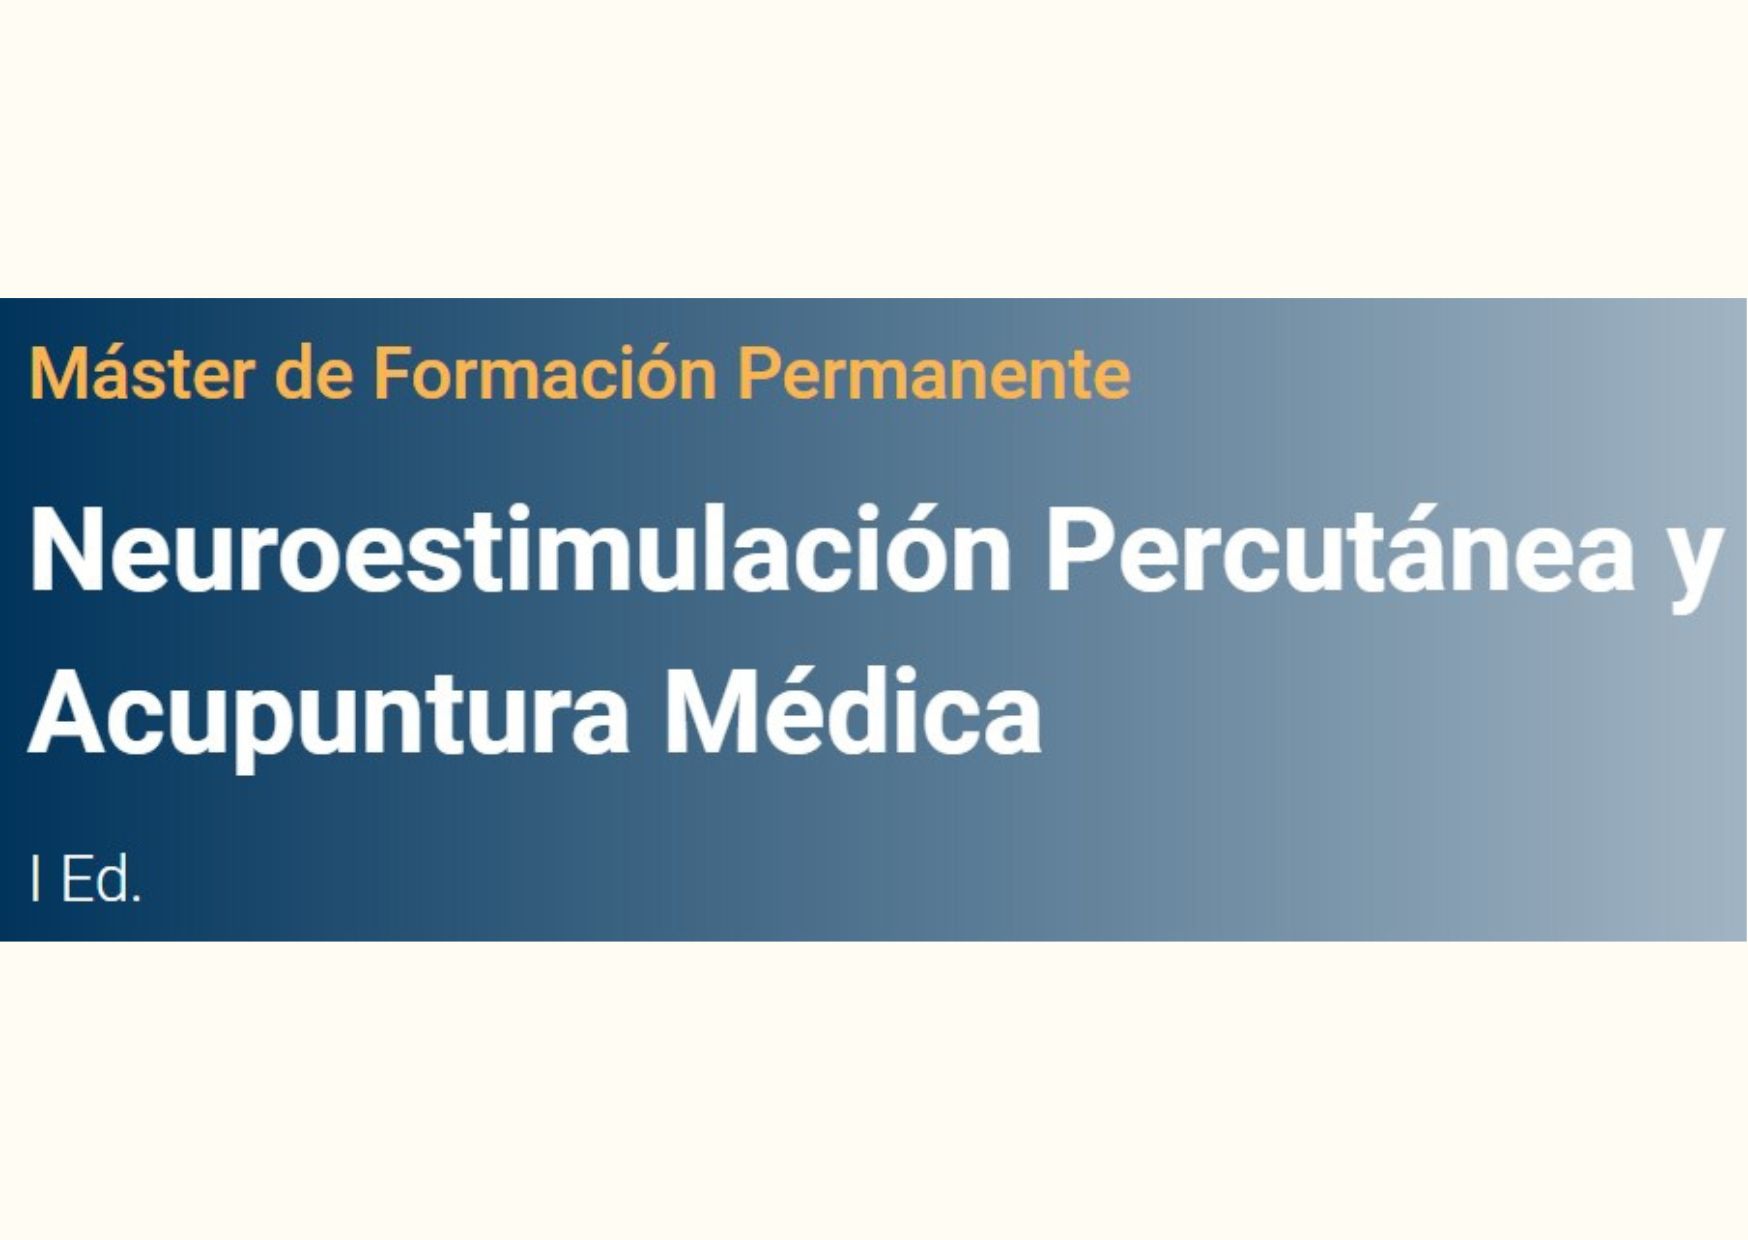 Primera edición del Máster de Formación Permanente: Neuroestimulación Percutánea y Acupuntura Médica